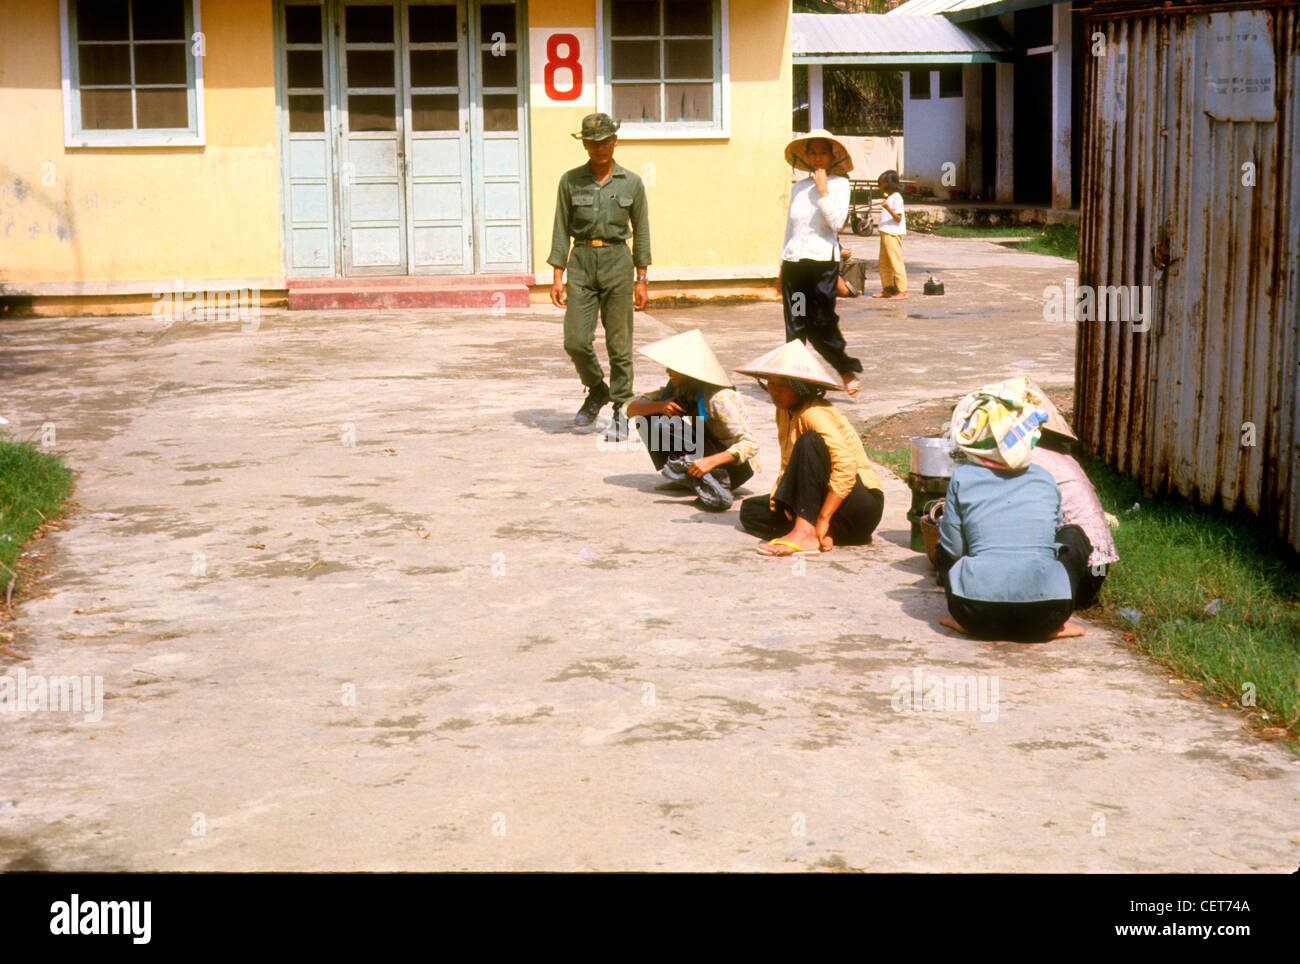 ARVN sud soldato vietnamita passando le donne che lavorano nel villaggio durante la Guerra del Vietnam. Foto Stock